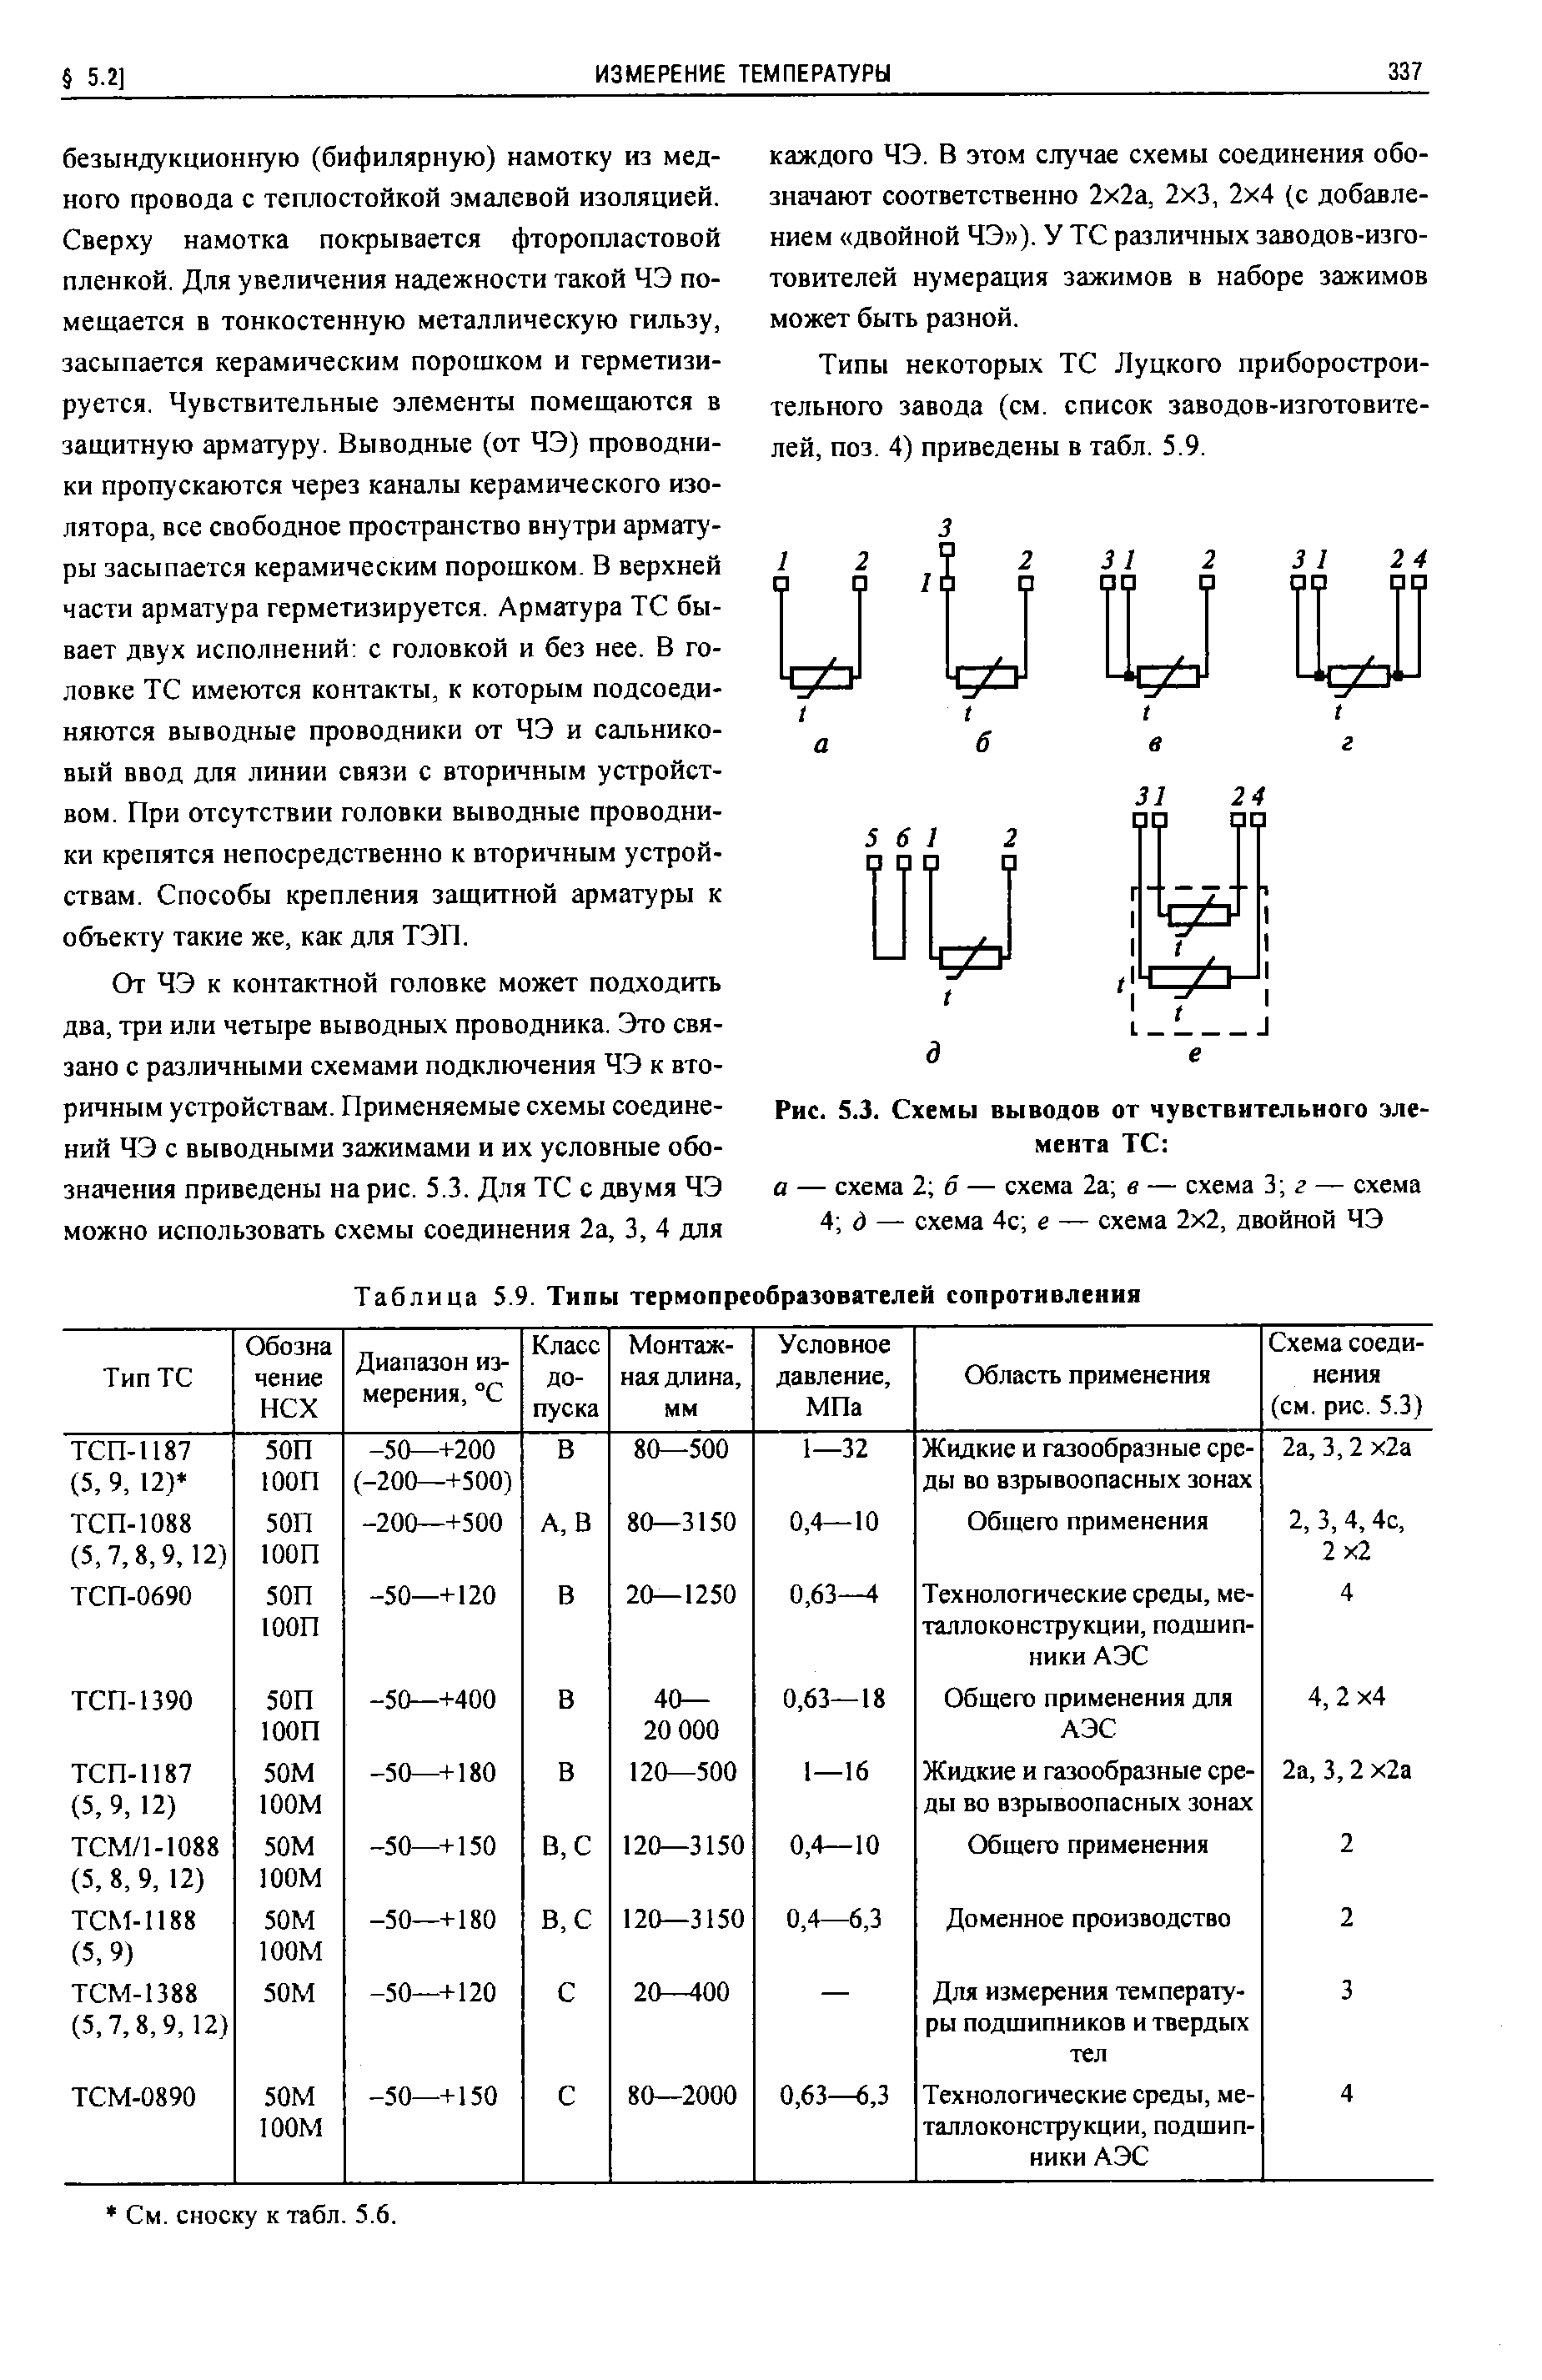 Таблица 5.9. Типы термопреобразователей сопротивления
